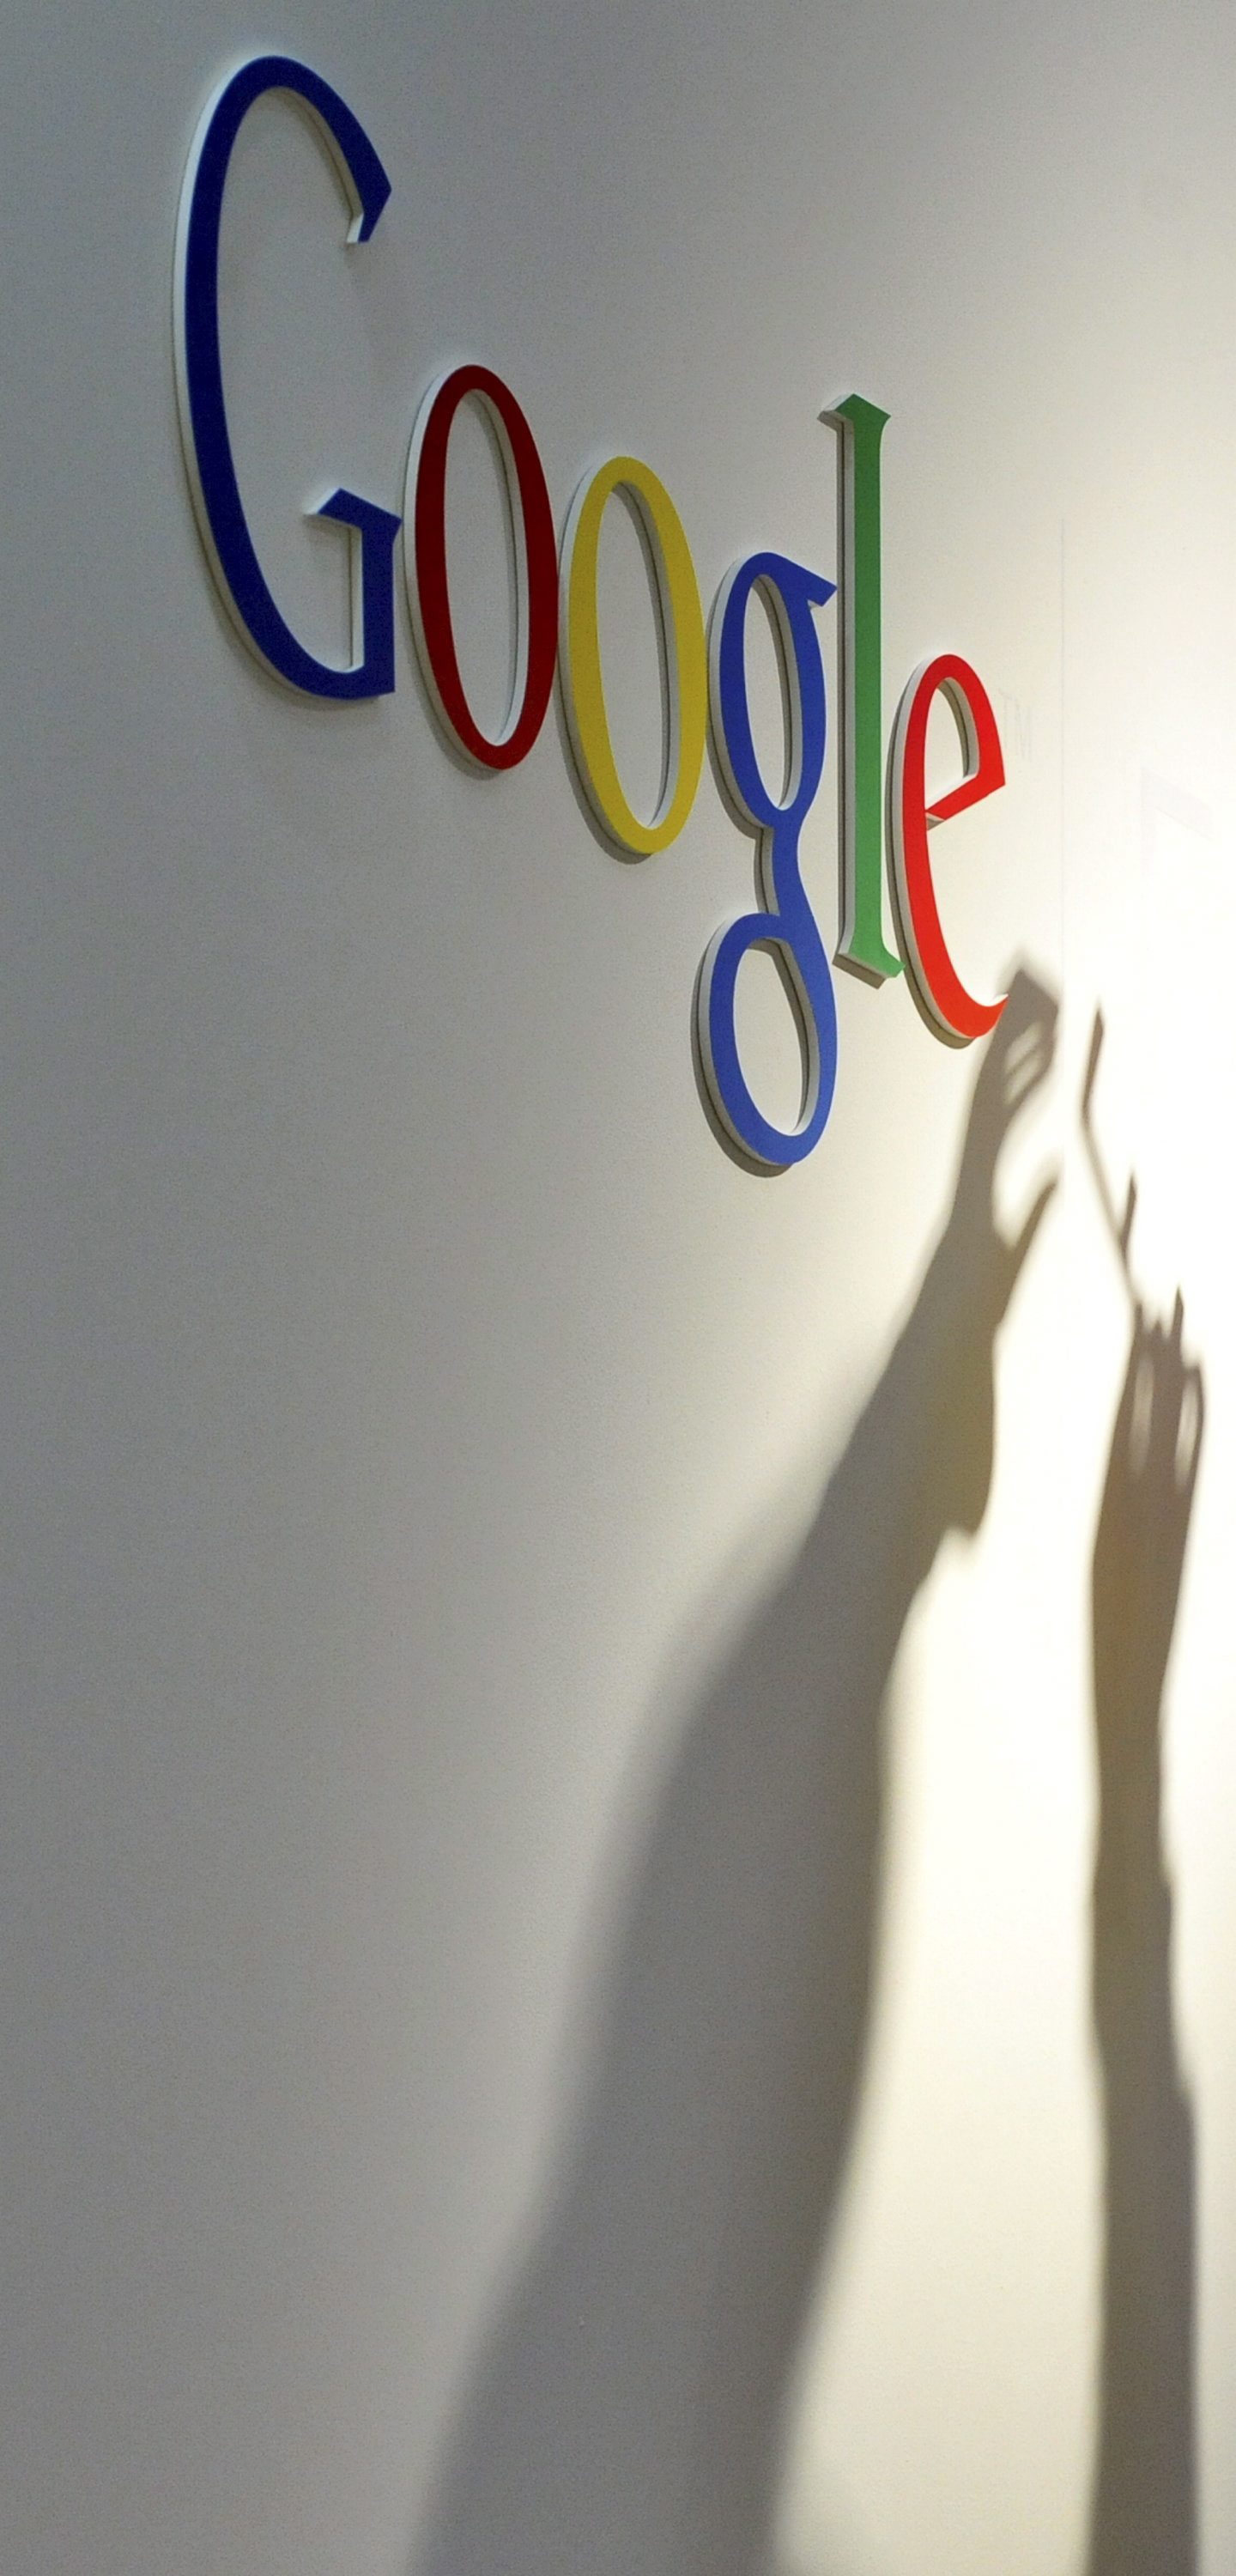 Google ще печели от картите си